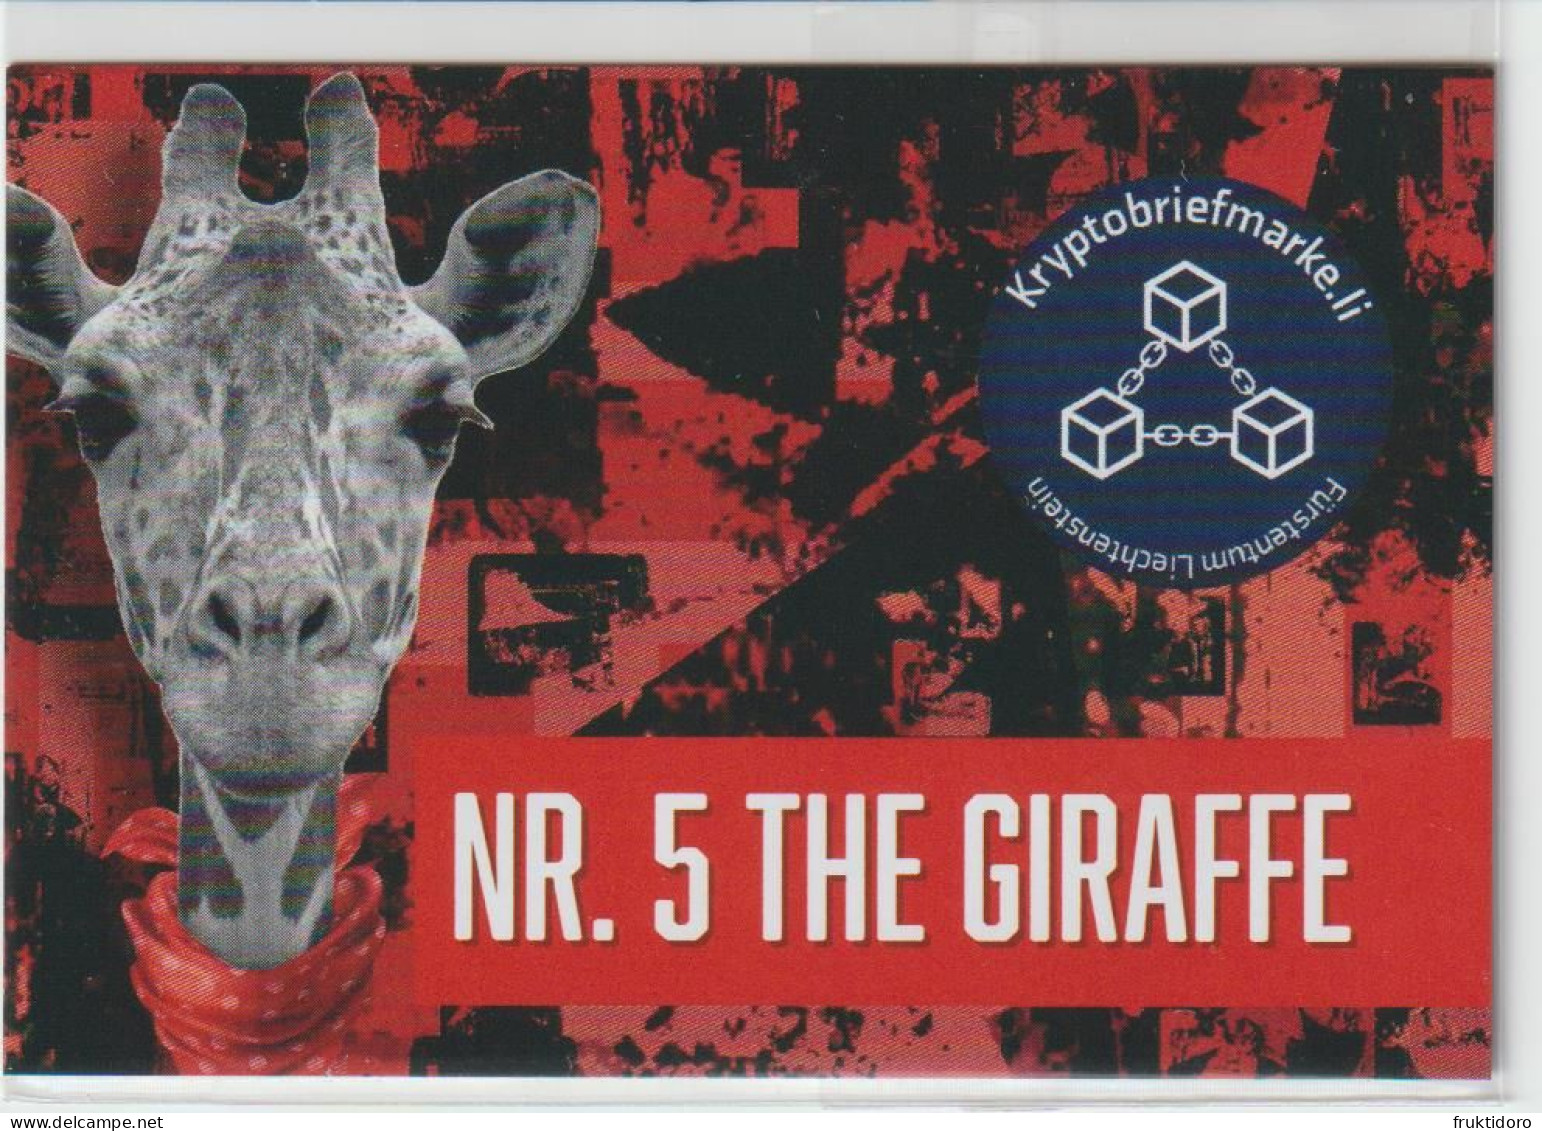 Liechtenstein Mi CRYF 7 Crypto Stamp Nr. 5 - The Giraffe Blue Scarf ** 2023 - Ungebraucht